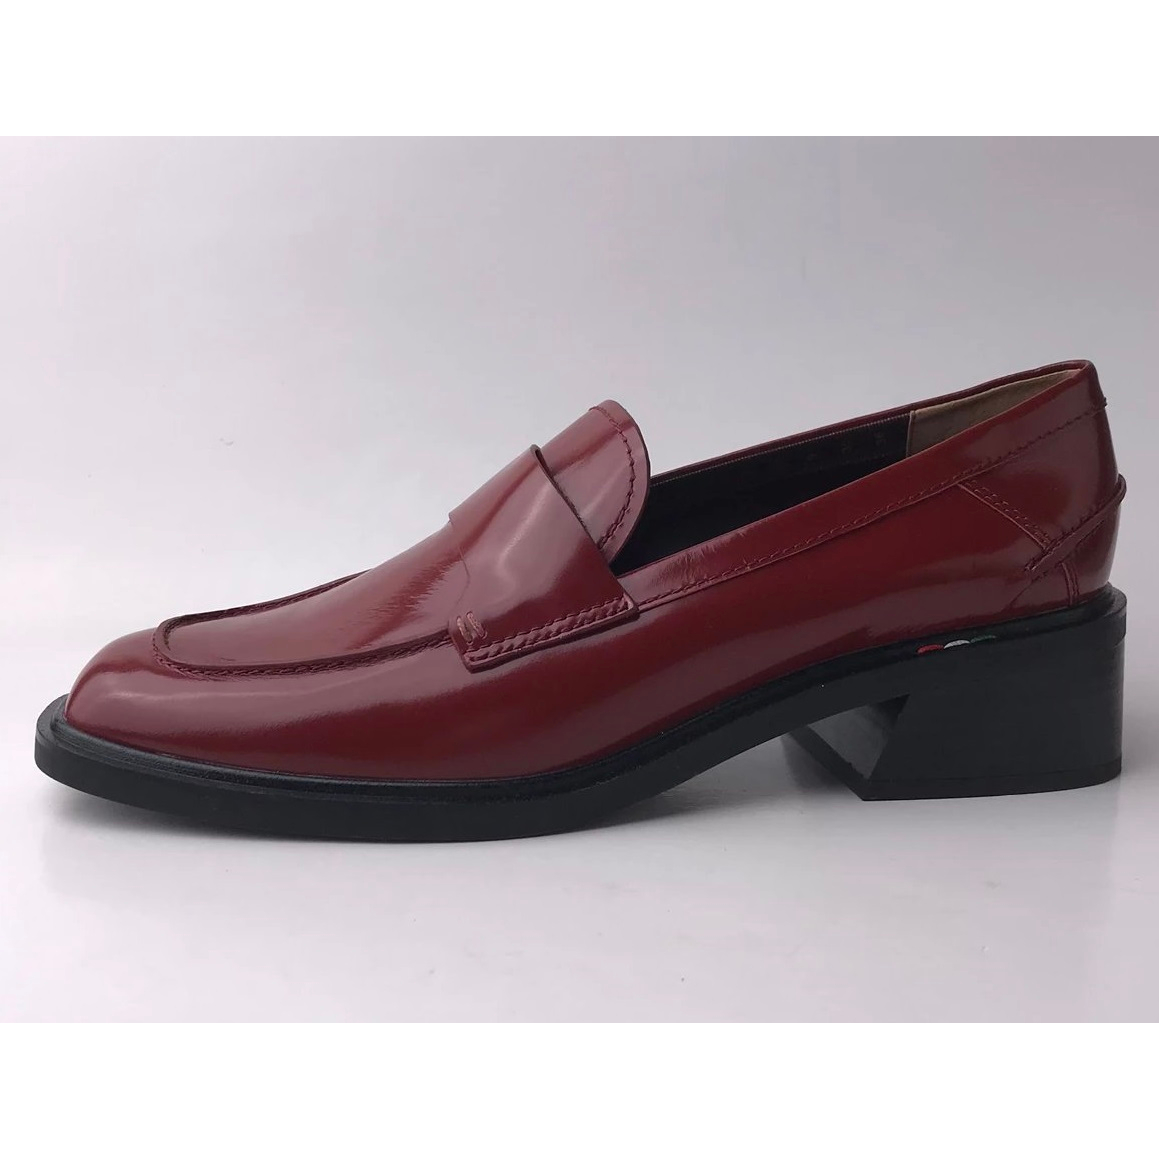 念鞋P489】Franco Sarto 真皮有跟樂福鞋 US11(27.5cm)大腳,大尺,大呎